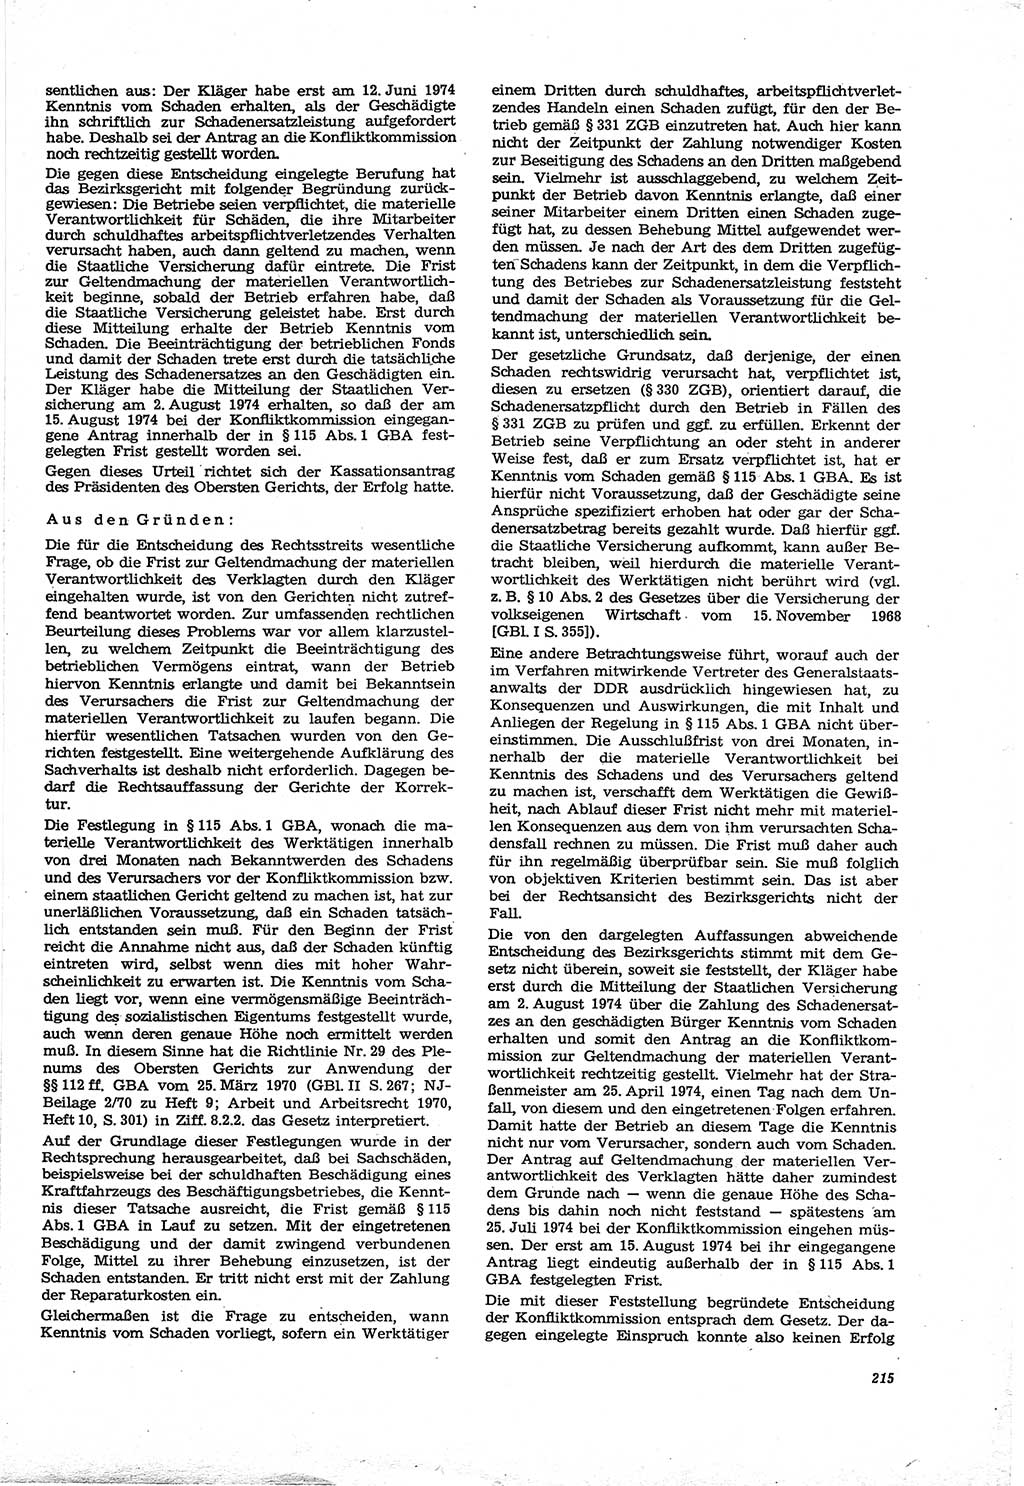 Neue Justiz (NJ), Zeitschrift für Recht und Rechtswissenschaft [Deutsche Demokratische Republik (DDR)], 30. Jahrgang 1976, Seite 215 (NJ DDR 1976, S. 215)